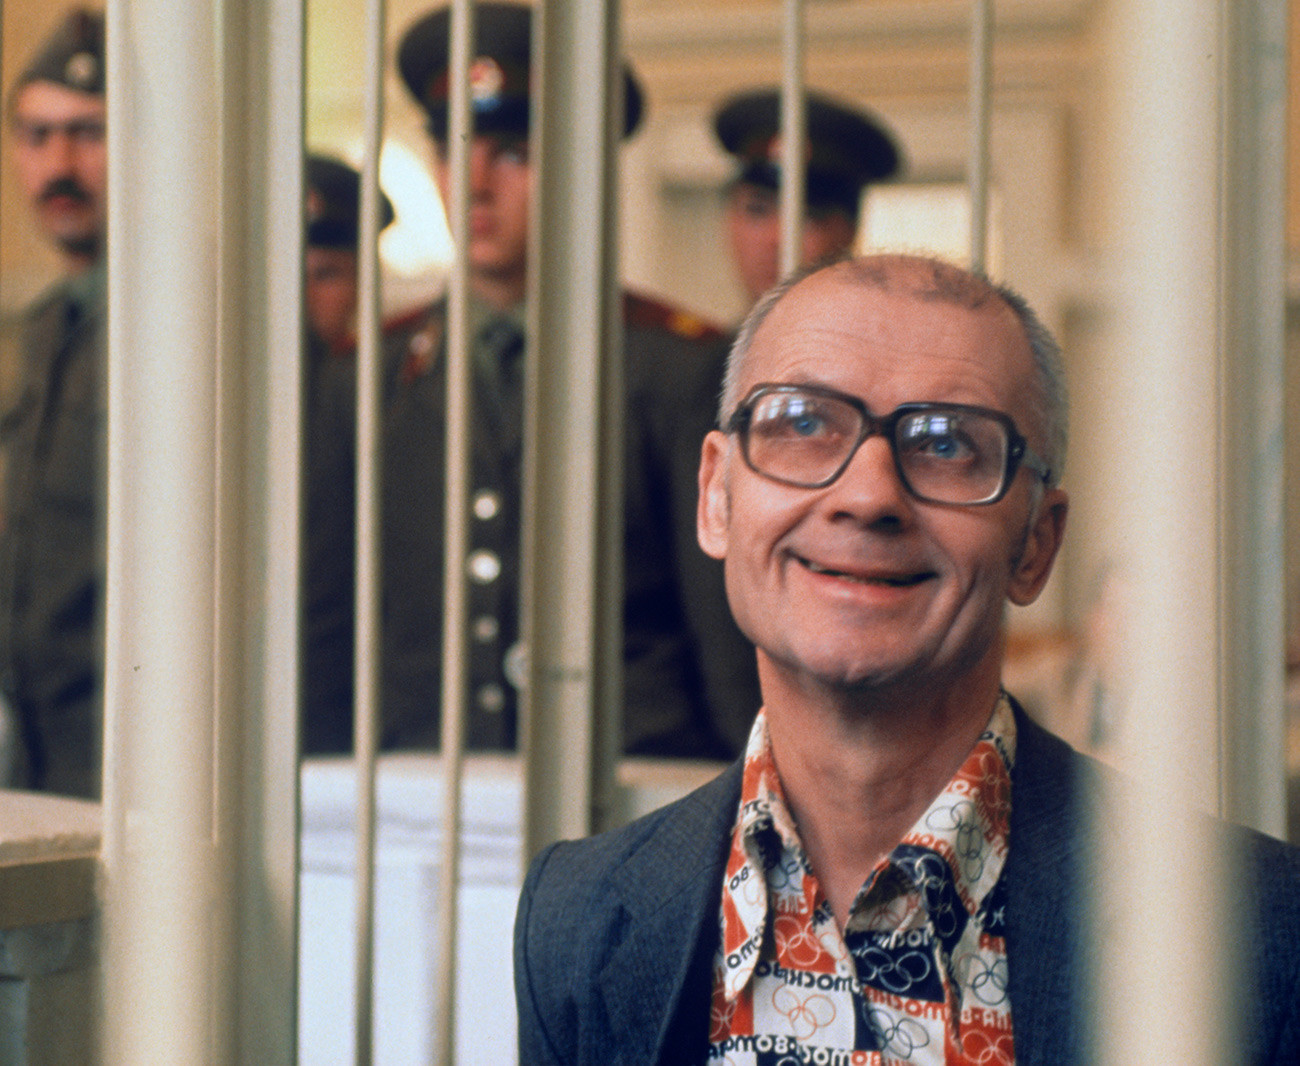 Андреј Чикатило, један од најпознатијих серијских убица у СССР-у. Чикатило је 14. фебруара 1994. године доведен на место извршења пресуде. Погубљен је пуцњем у потиљак.